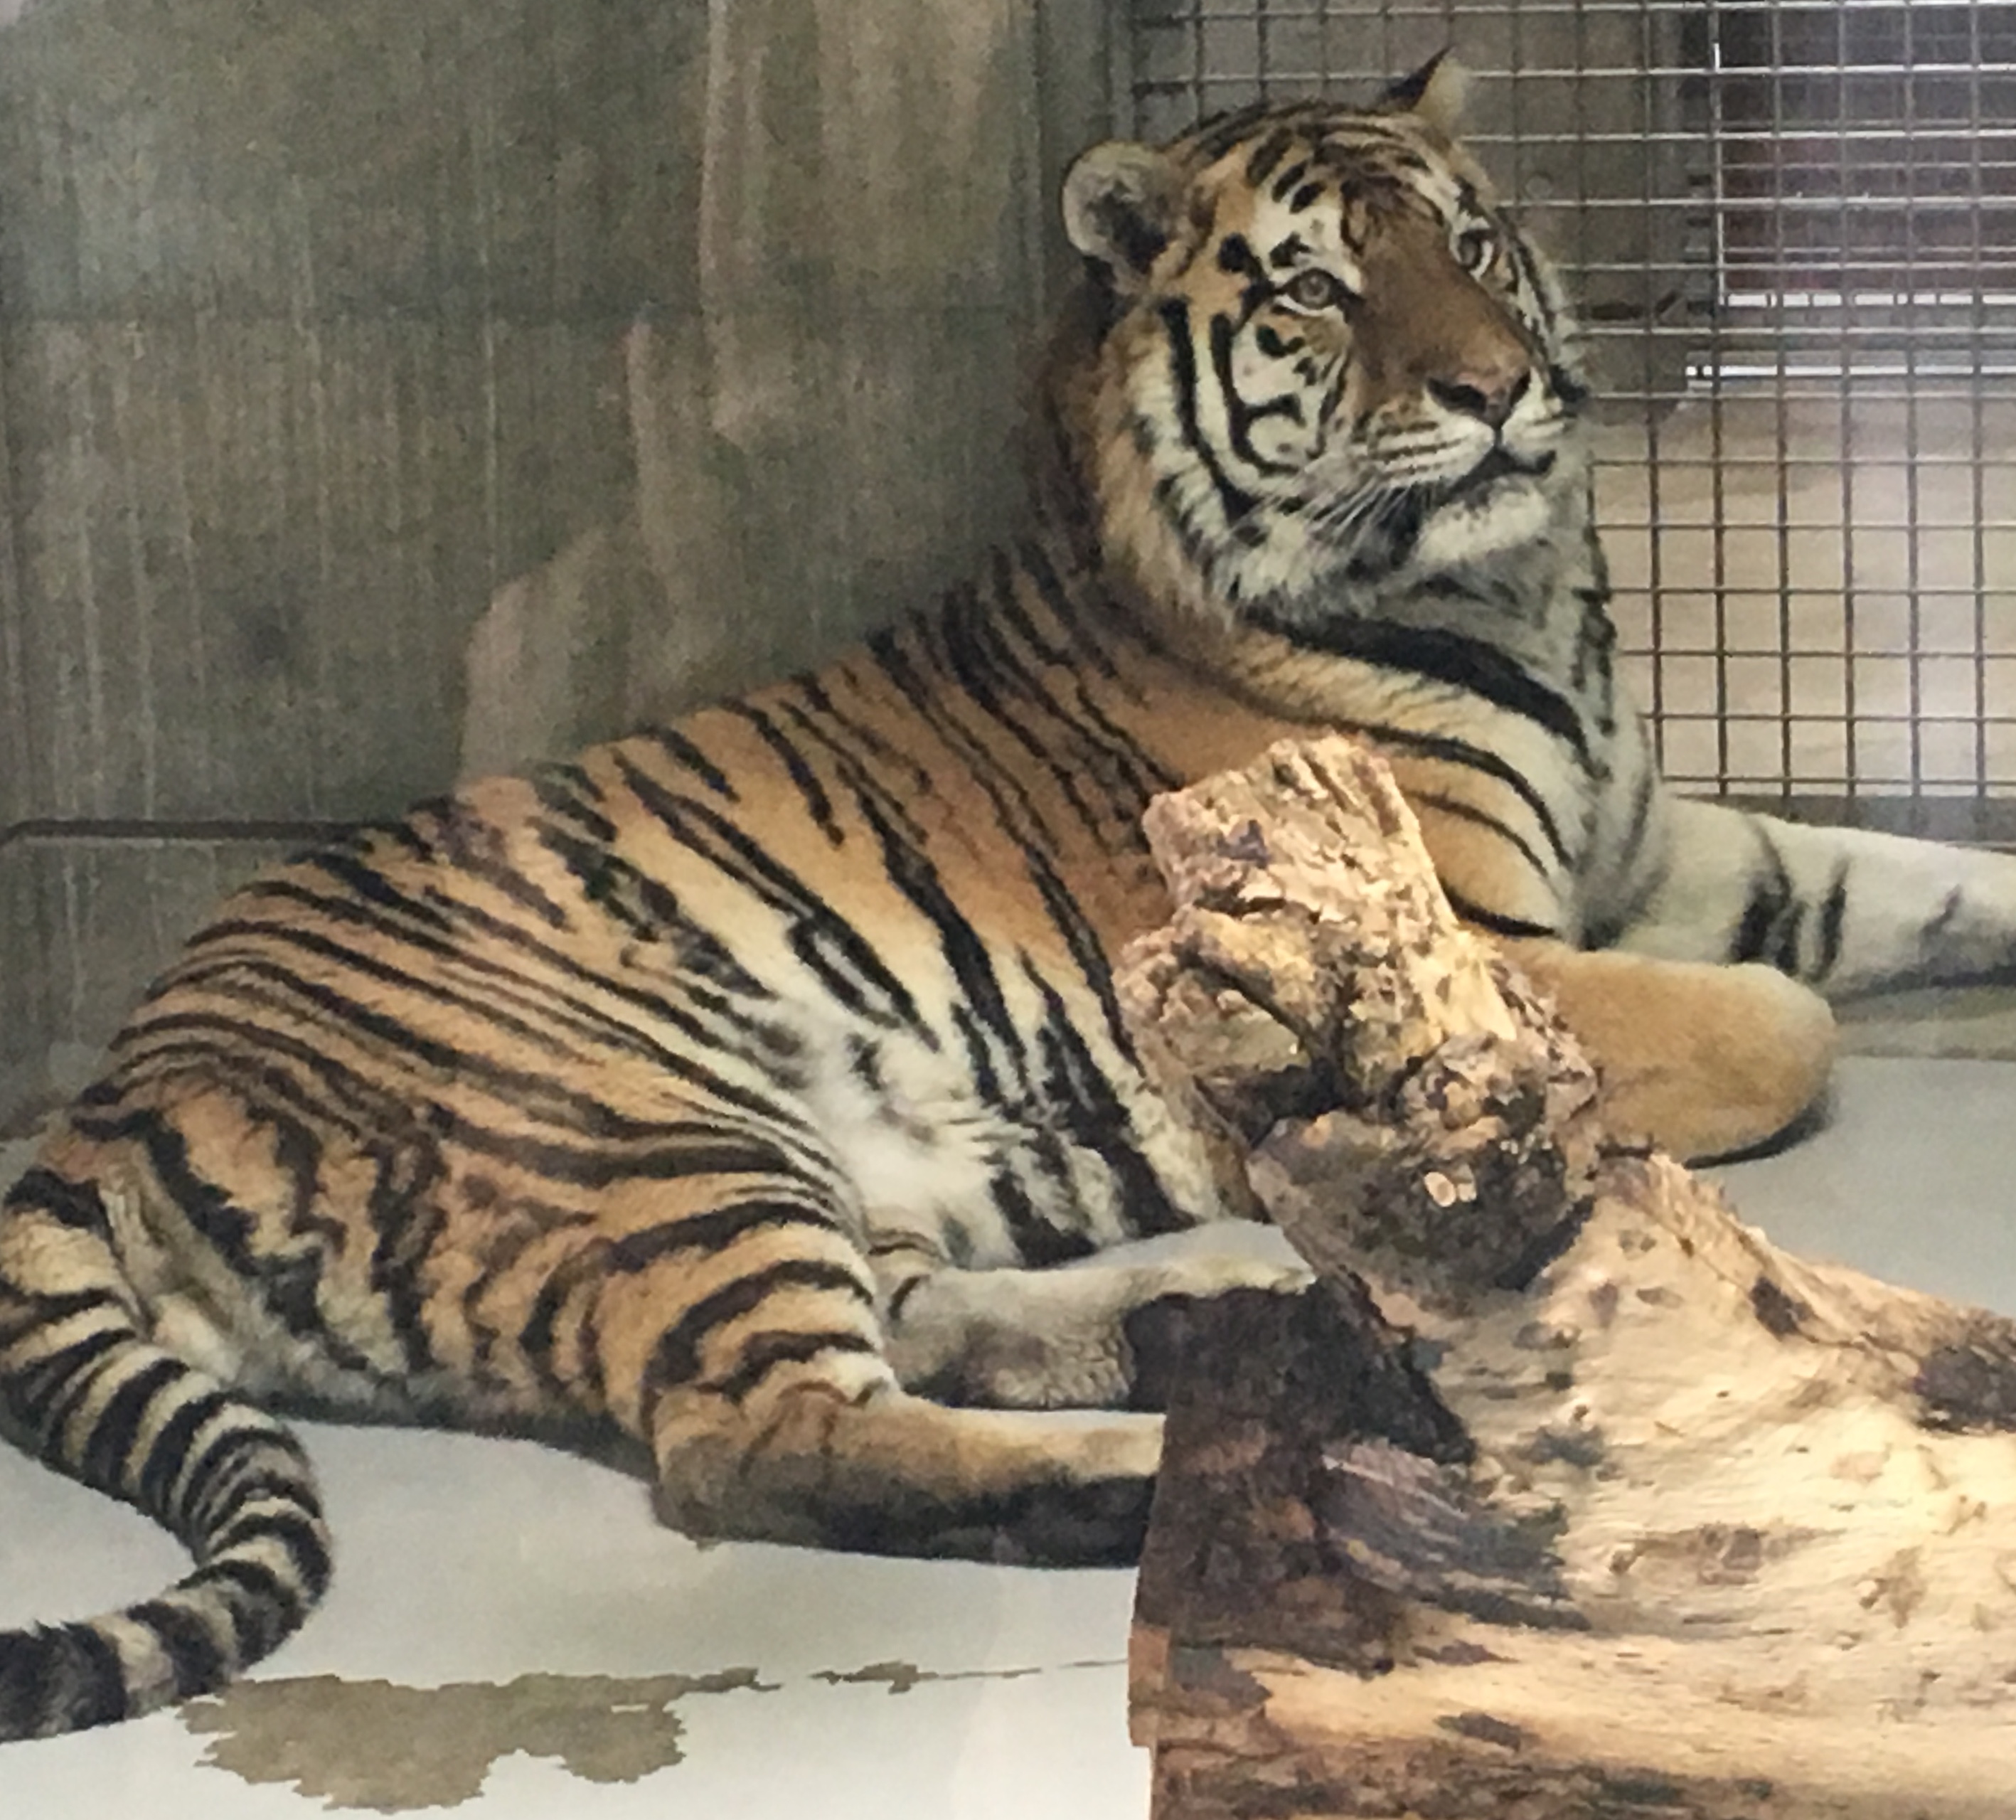 Tiger in caged enclosure at Tennoji Zoo